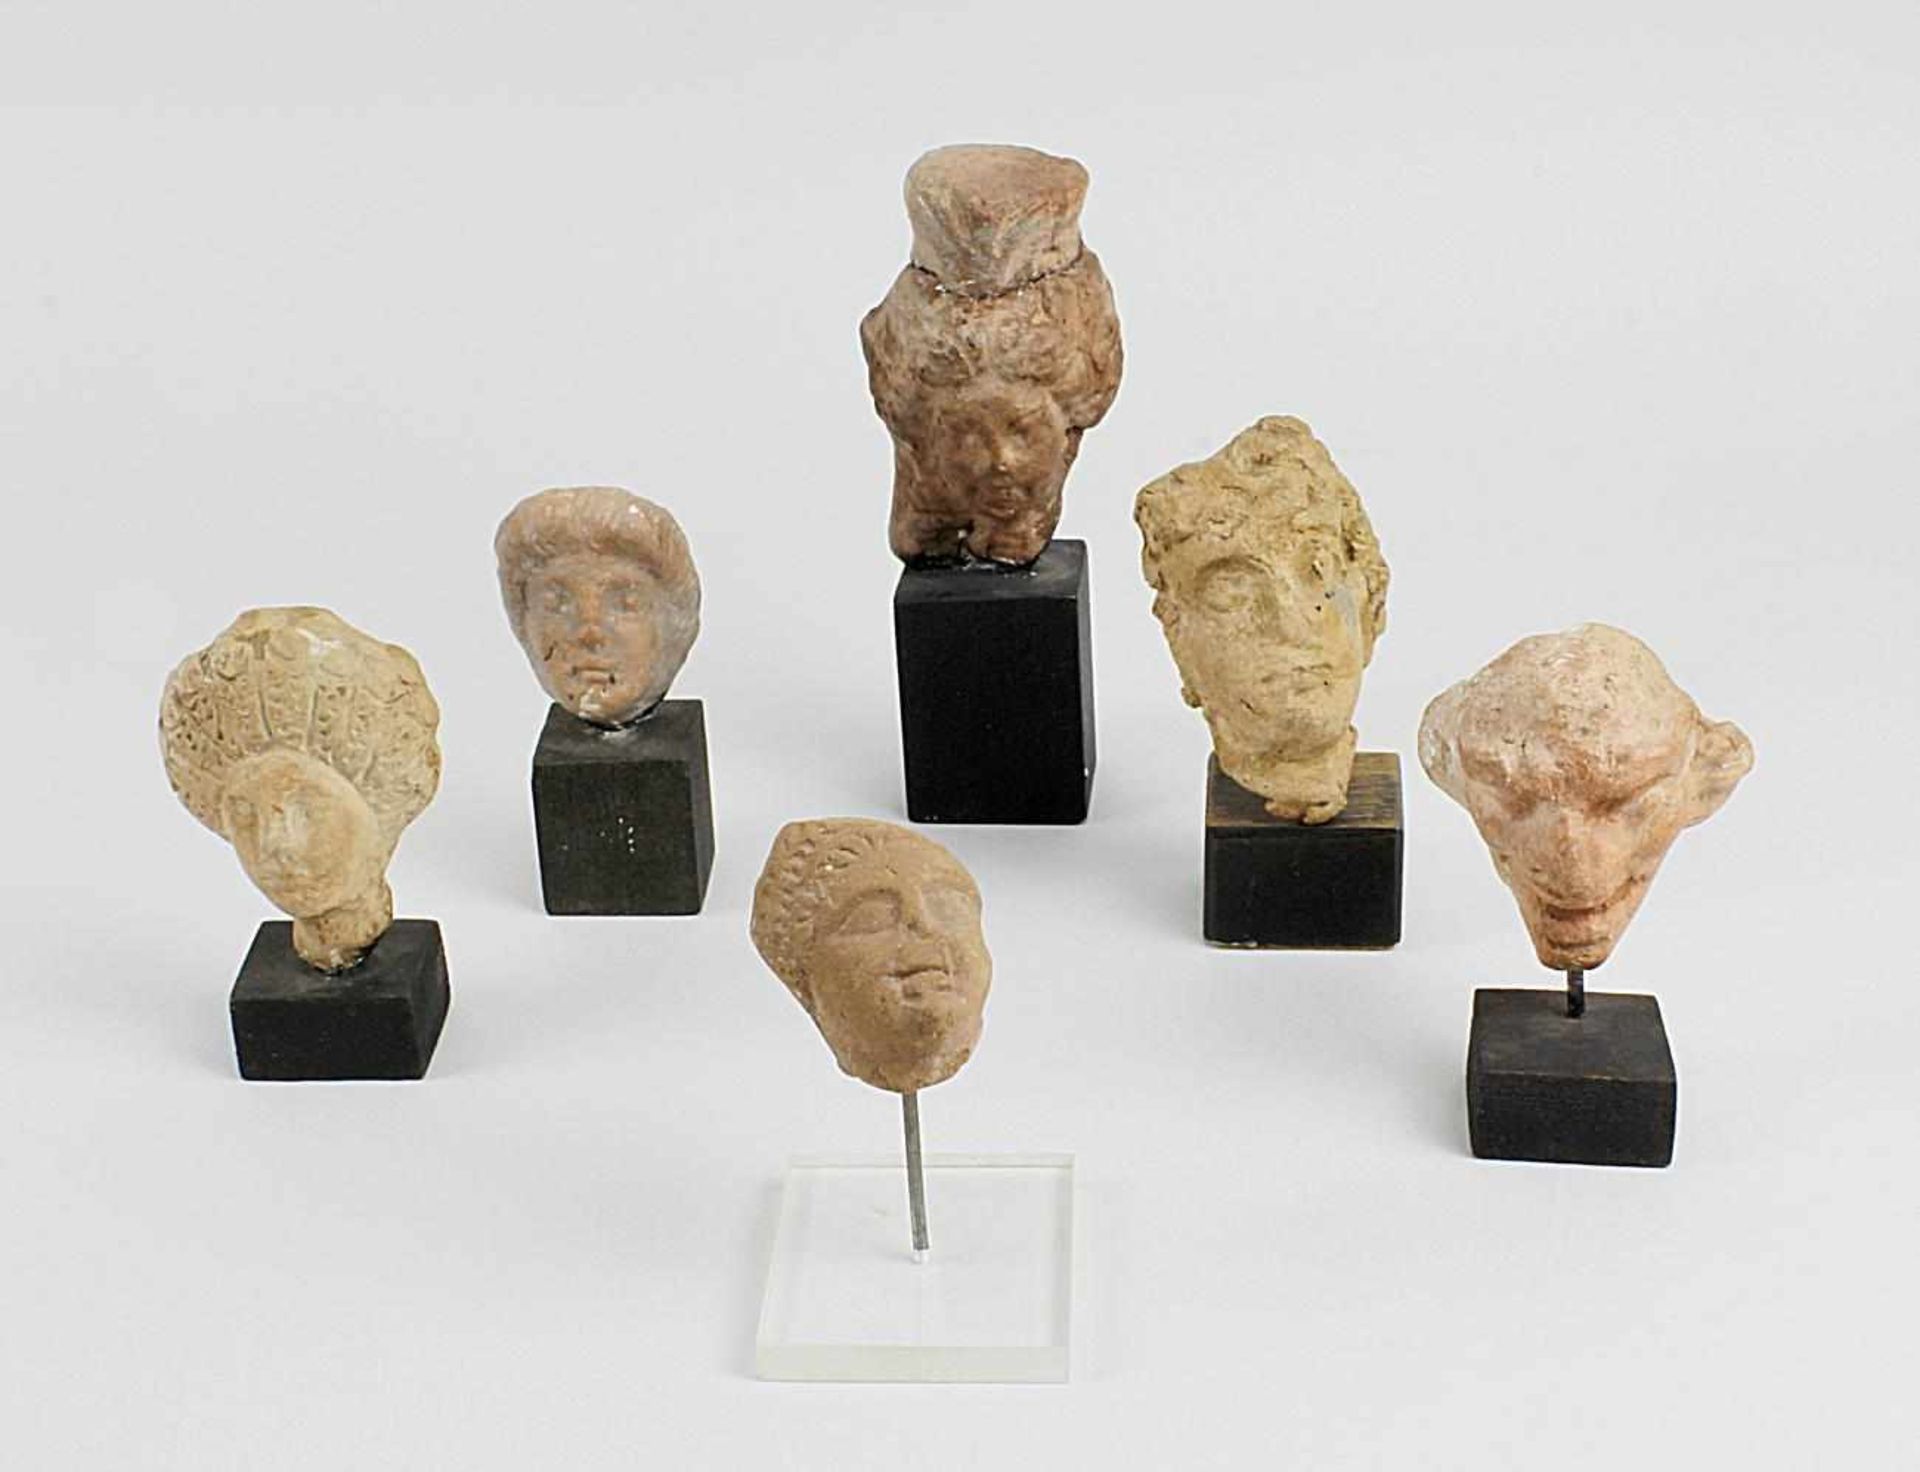 Sammlung von 6 hellenistischen provinzialrömischen Terrakotta-Figurenköpfchen, wohl 100 v. Chr. - 2.